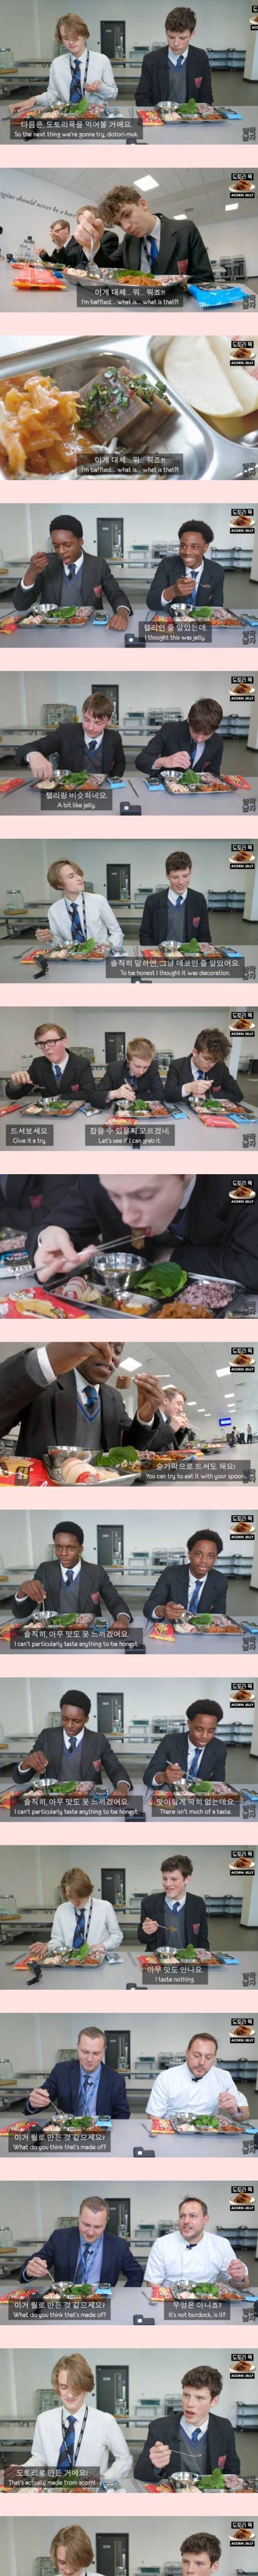 [스압] 외국인도 공감하는 돈주고 사먹기 젤 아까운 한국음식no.1.....jpg